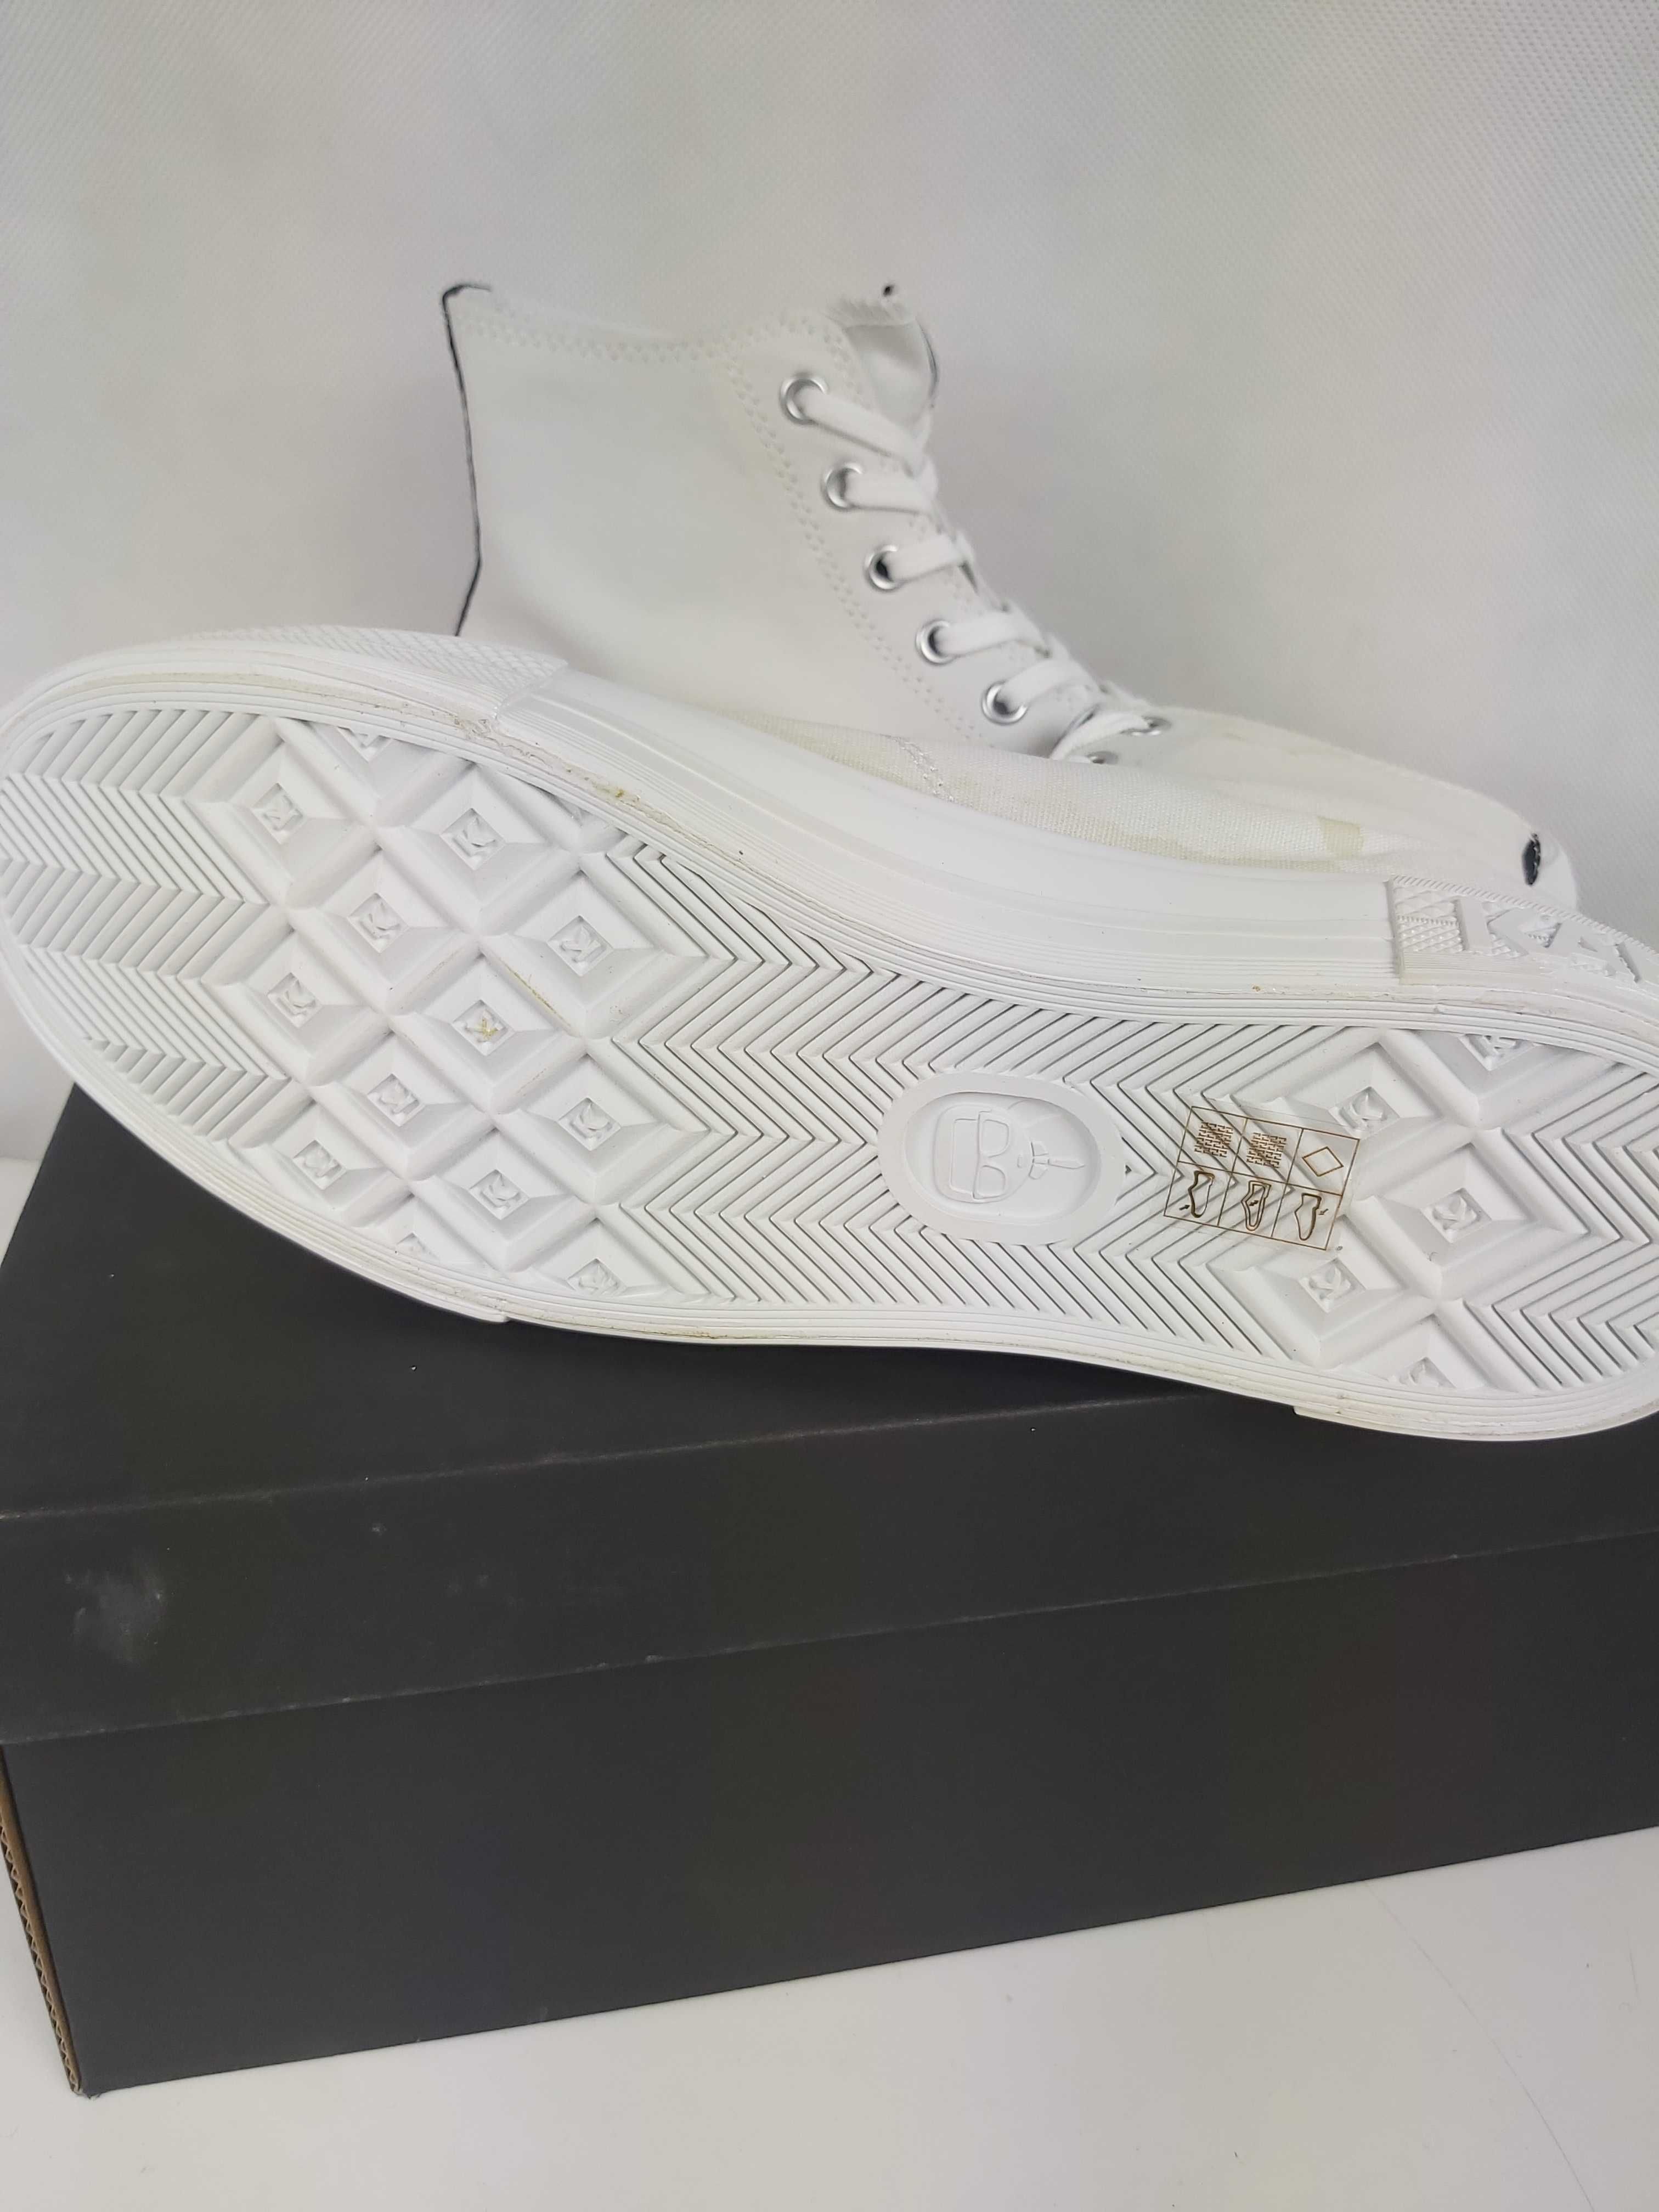 Nowe trapki wysokie KARL LAGERFELD białe sneakersy kampus III 40